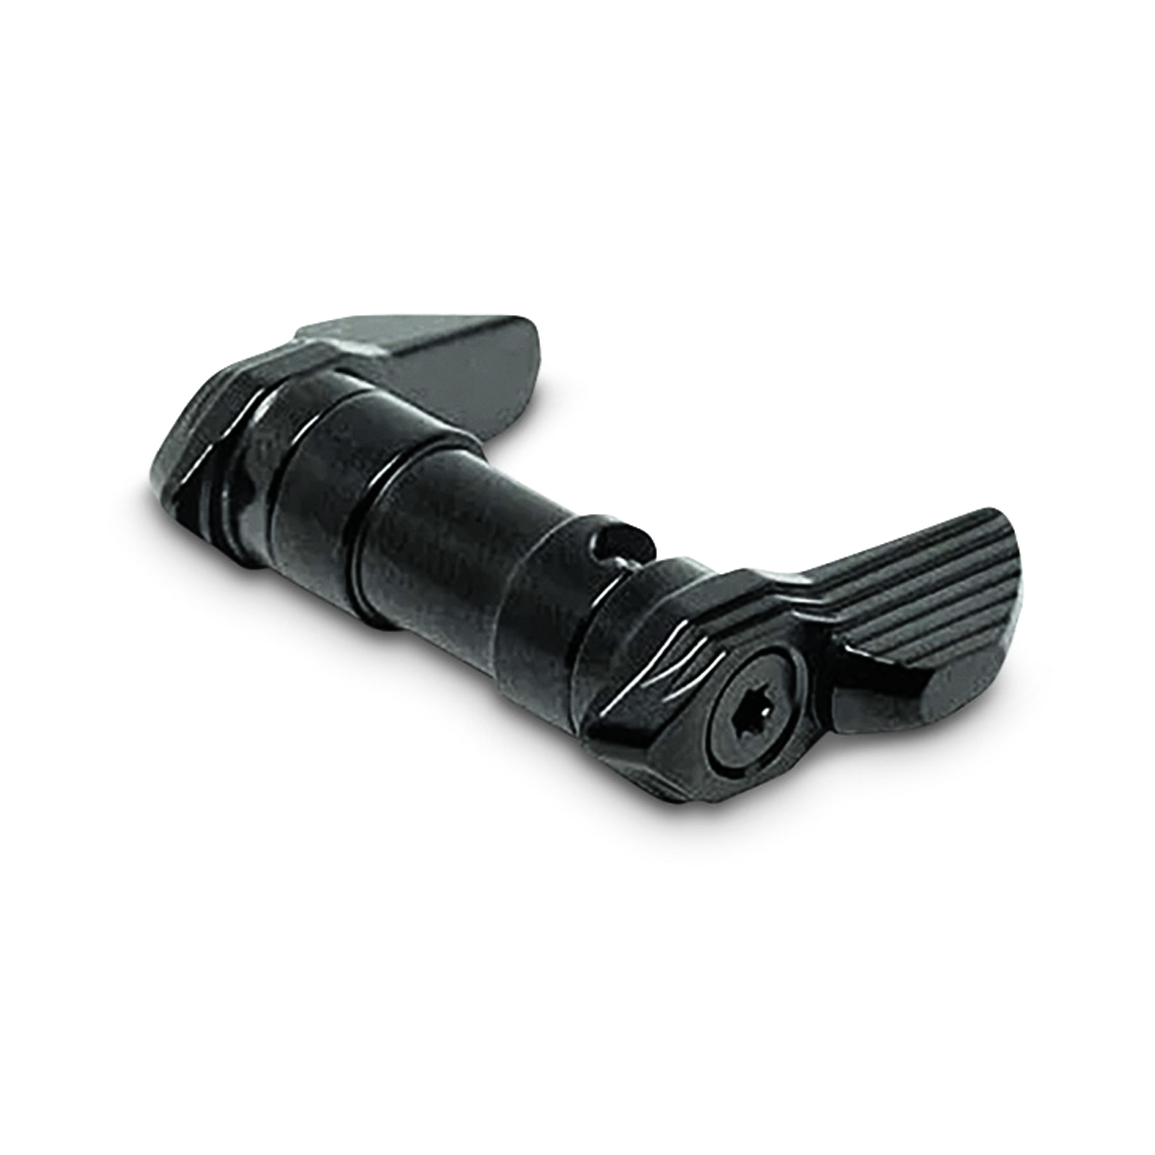 TriggerTech AR-15 Safety Selector, Black